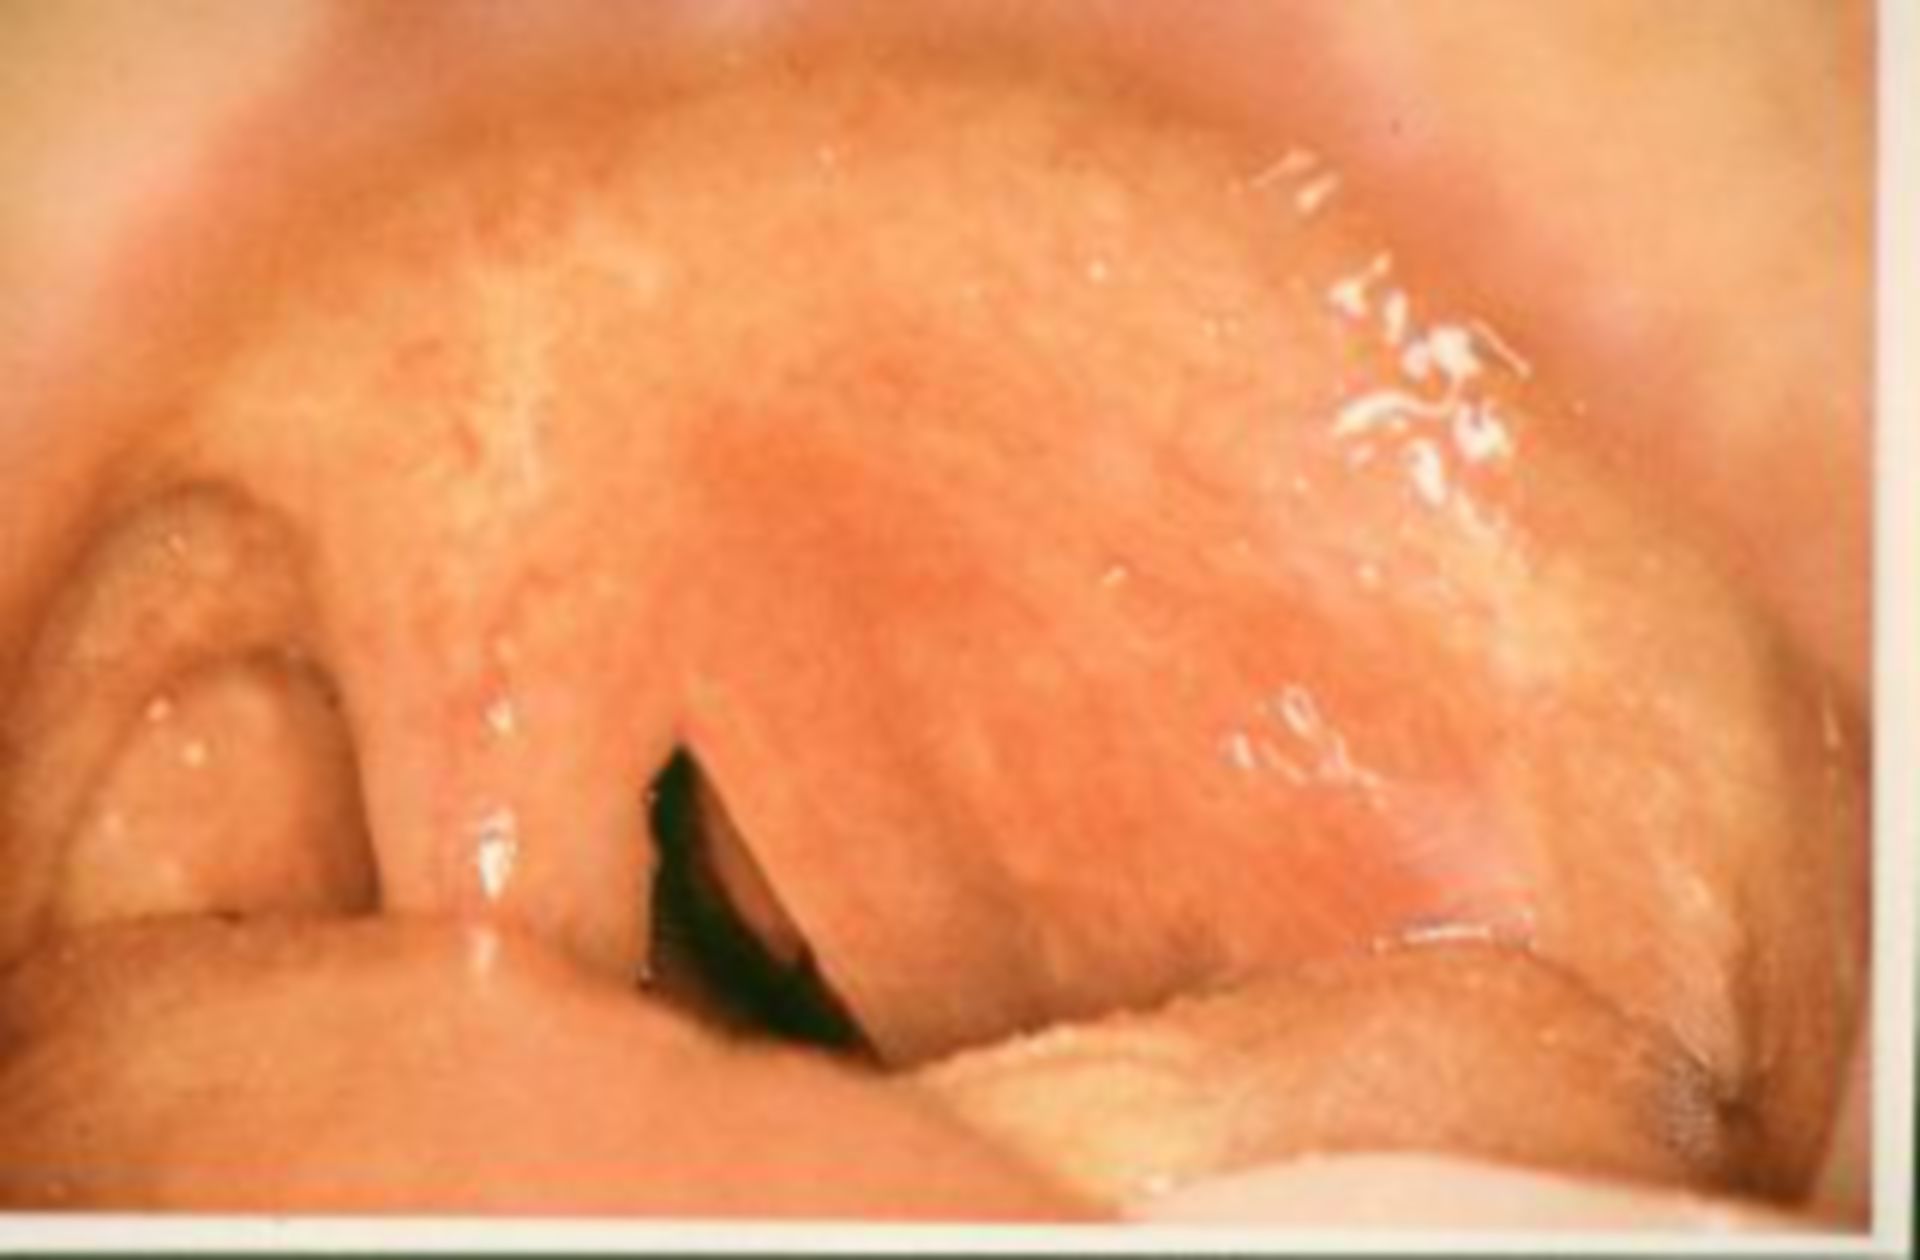 Peritonsillar abscess